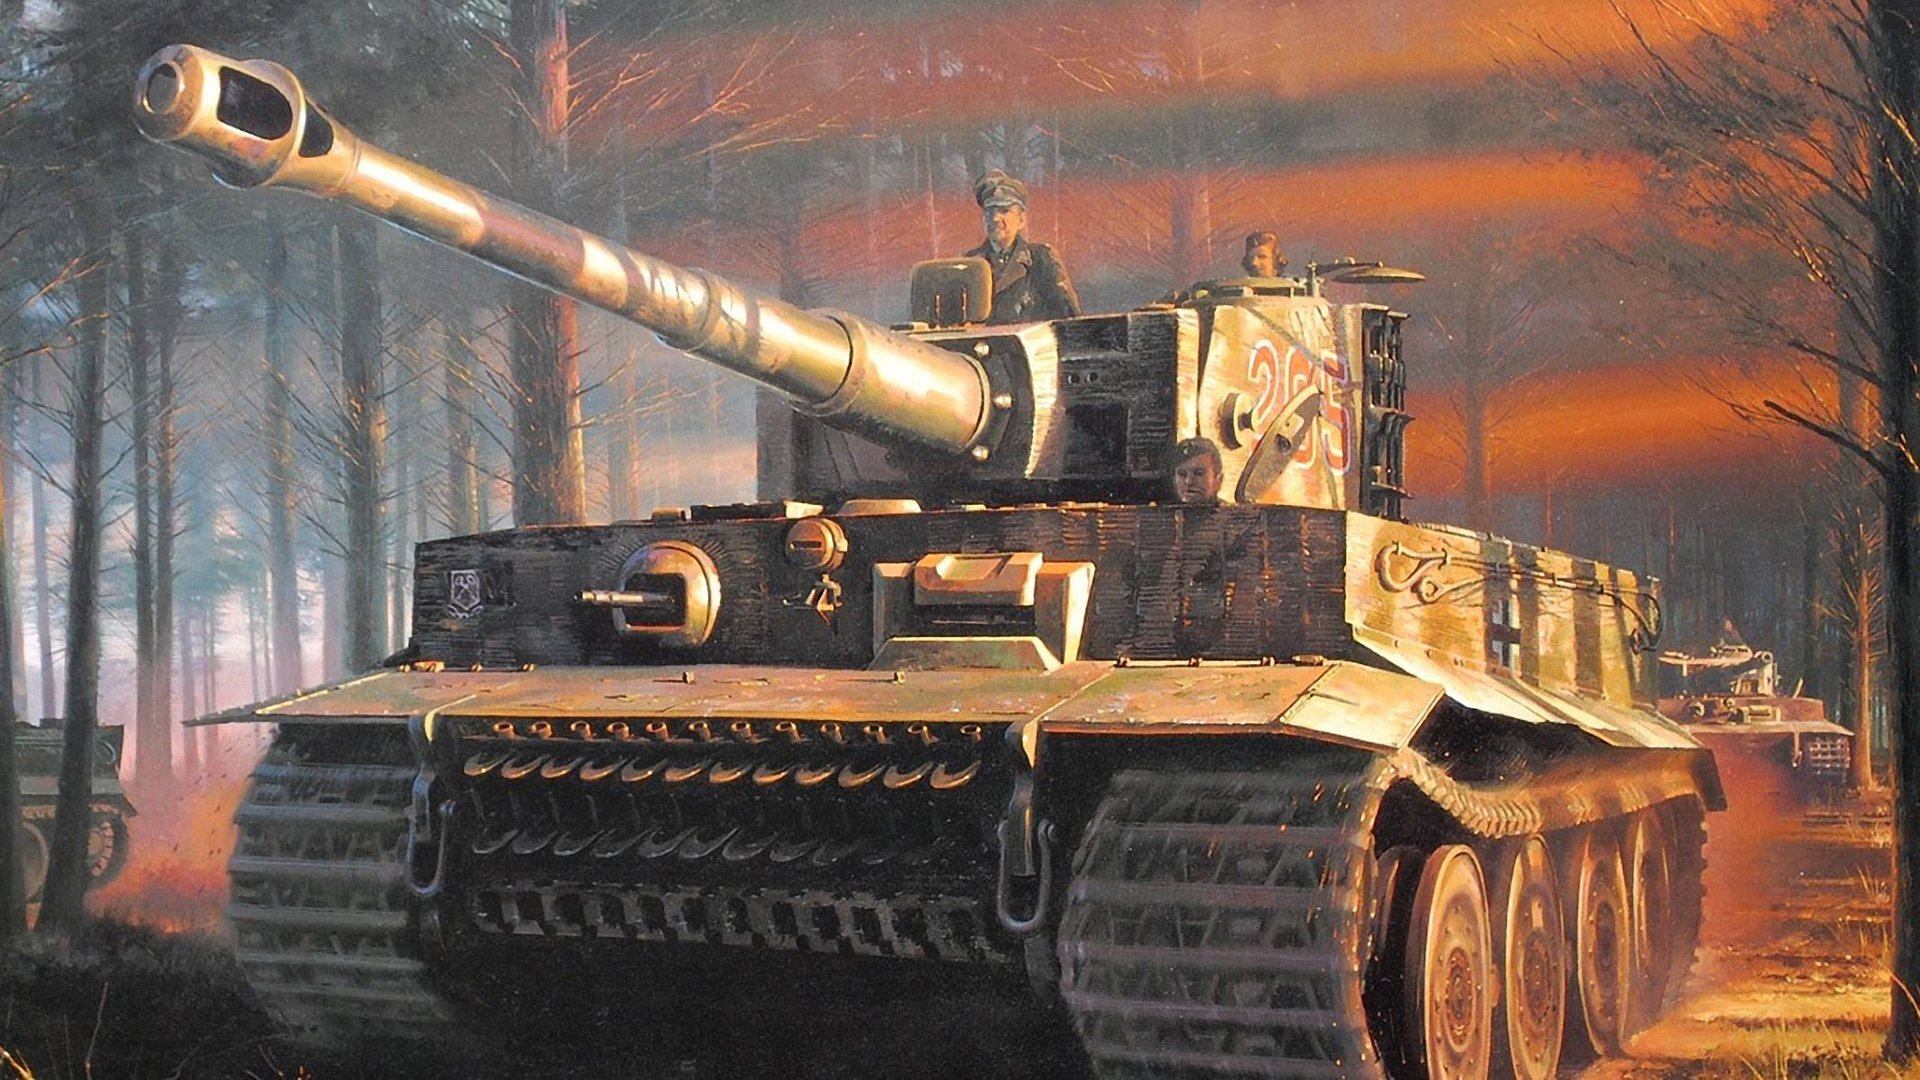 Обои с тегом:тигр, танк, рисунок, война.